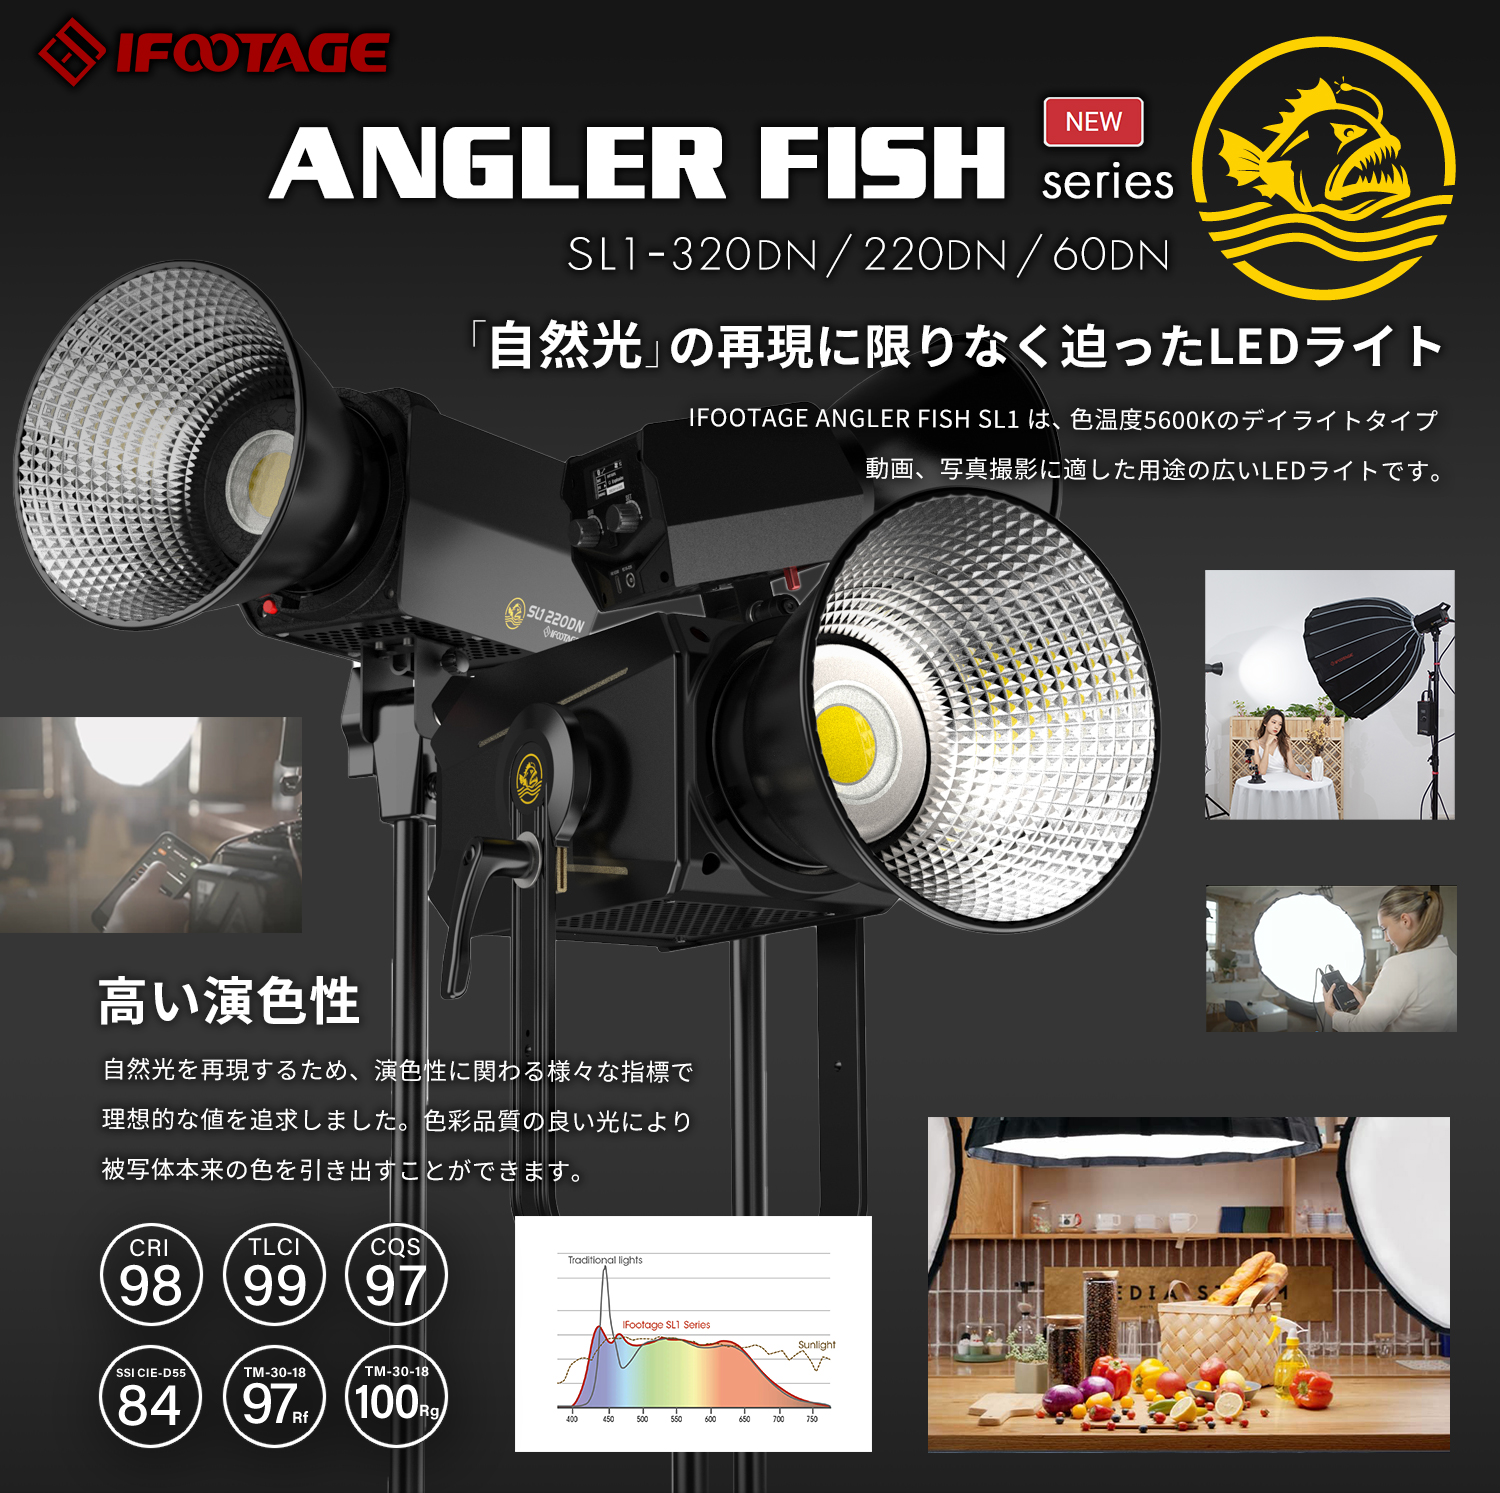 【注目商品】IFOOTAGE Anglerfish SL1 LEDライトシリーズ